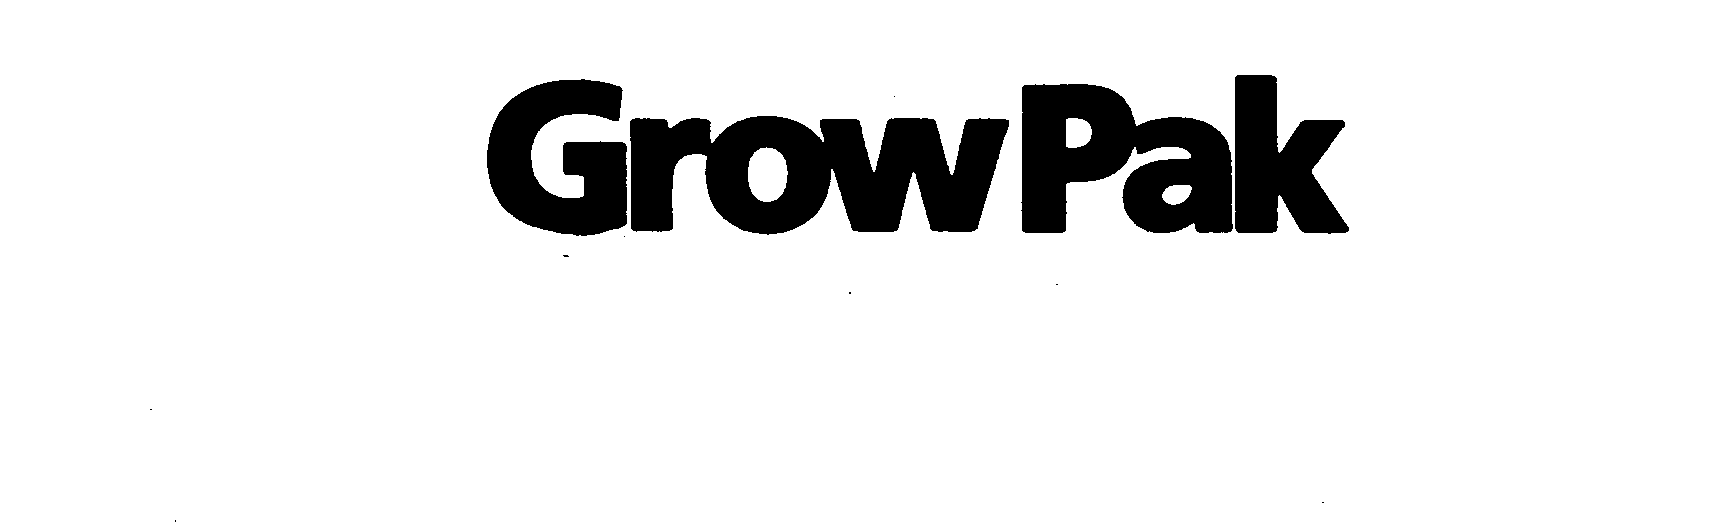  GROW PAK